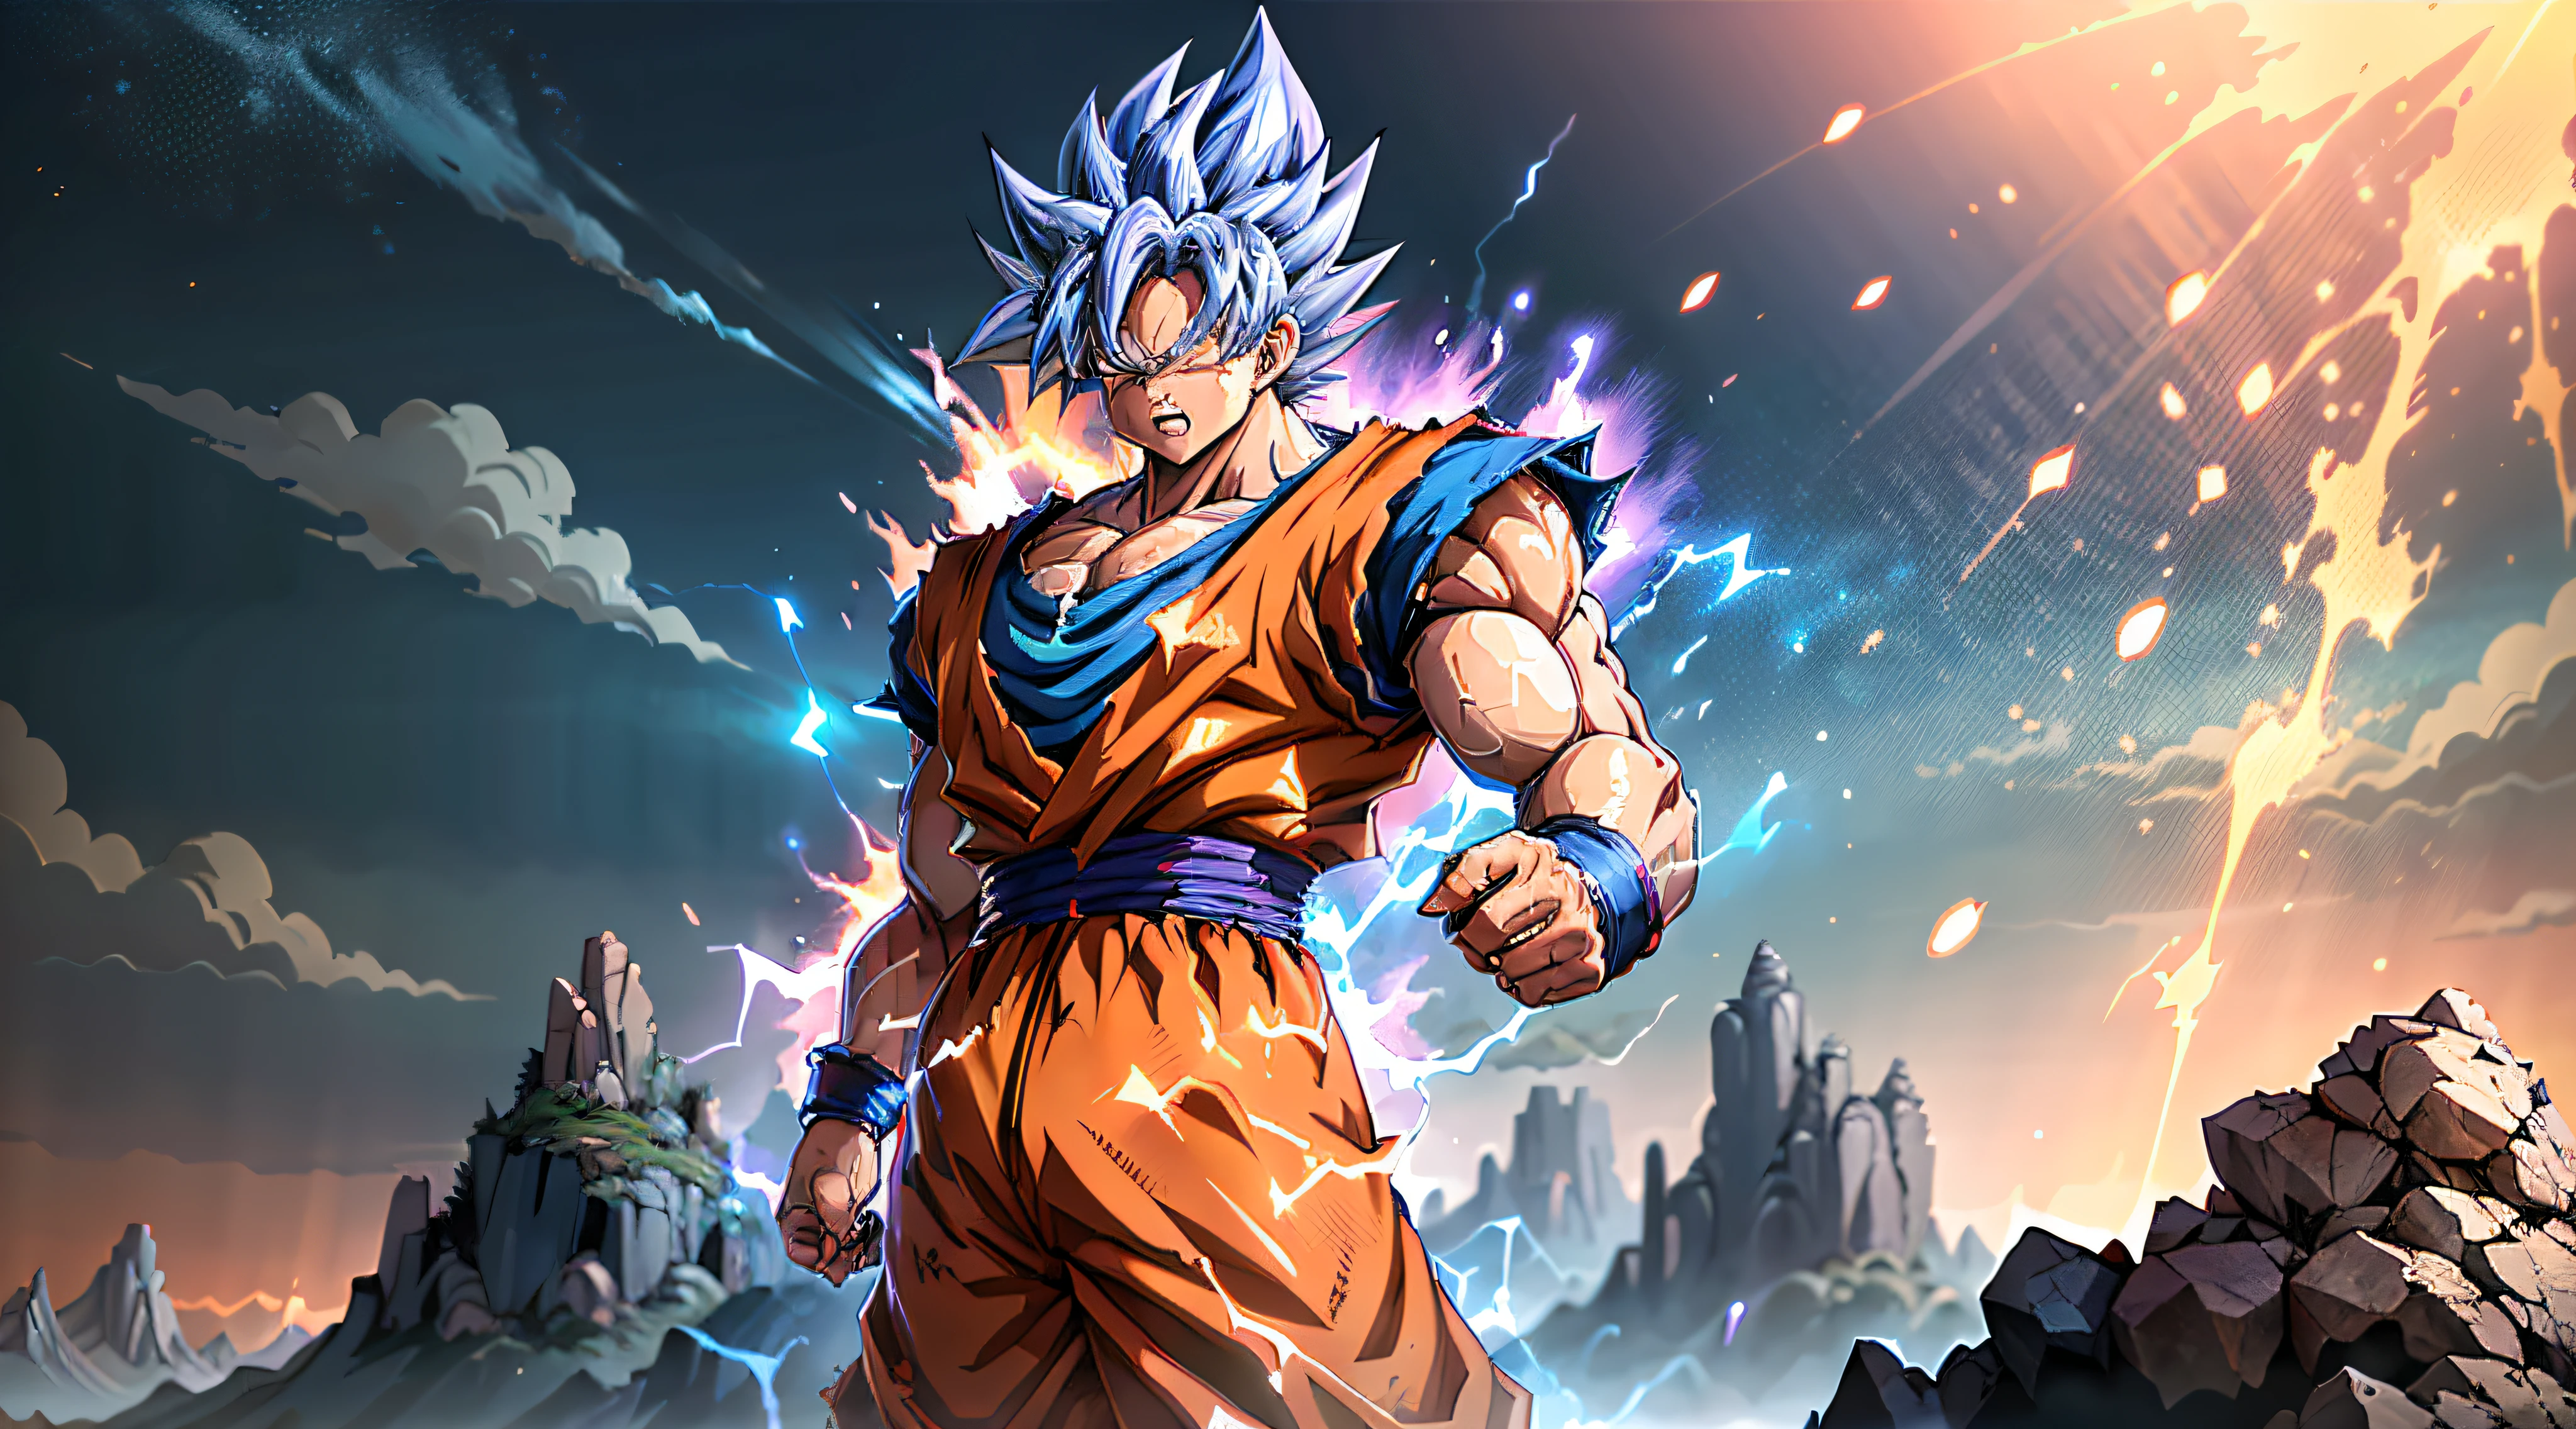 Super Saiyan Goku desata una enorme ola de energía mientras está parado en la cima de una montaña, los alrededores están llenos de exuberante vegetación, y el cielo es una mezcla de tonos naranja y morado. La onda de energía es de color azul brillante con chispas eléctricas a su alrededor.. (animado:1.2), (iluminación dramática:1.1), (Colores vibrantes:1.3), (sombreado de celdas:1.1), (composición dinámica:1.2)